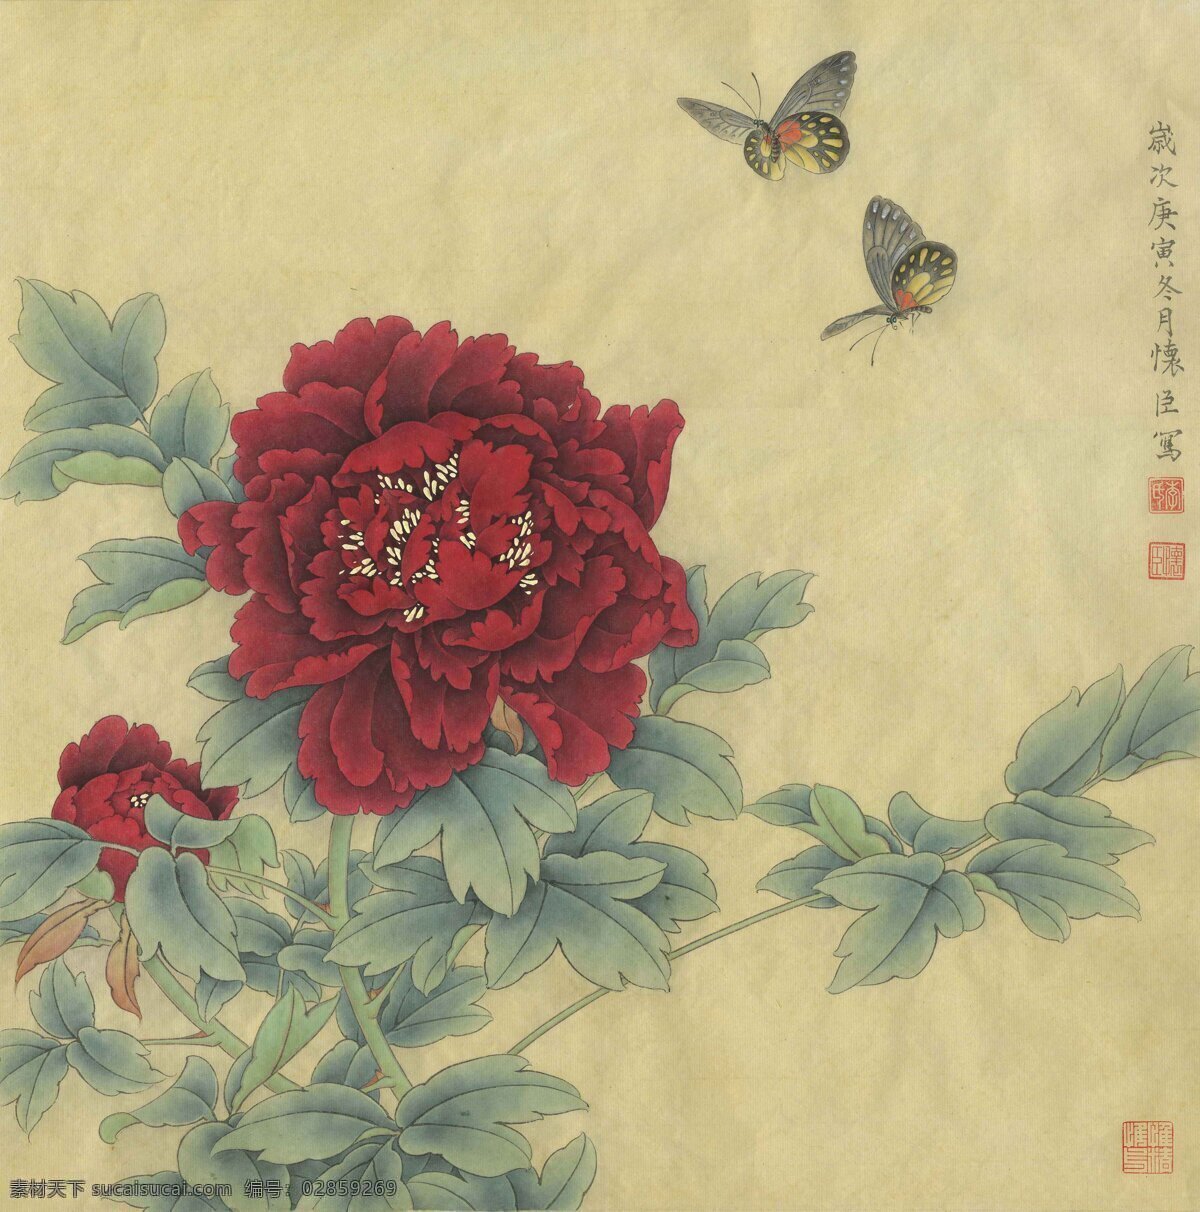 墨洒金牡丹花 李怀臣 中国画 工笔 牡丹 墨洒金 绘画书法 文化艺术